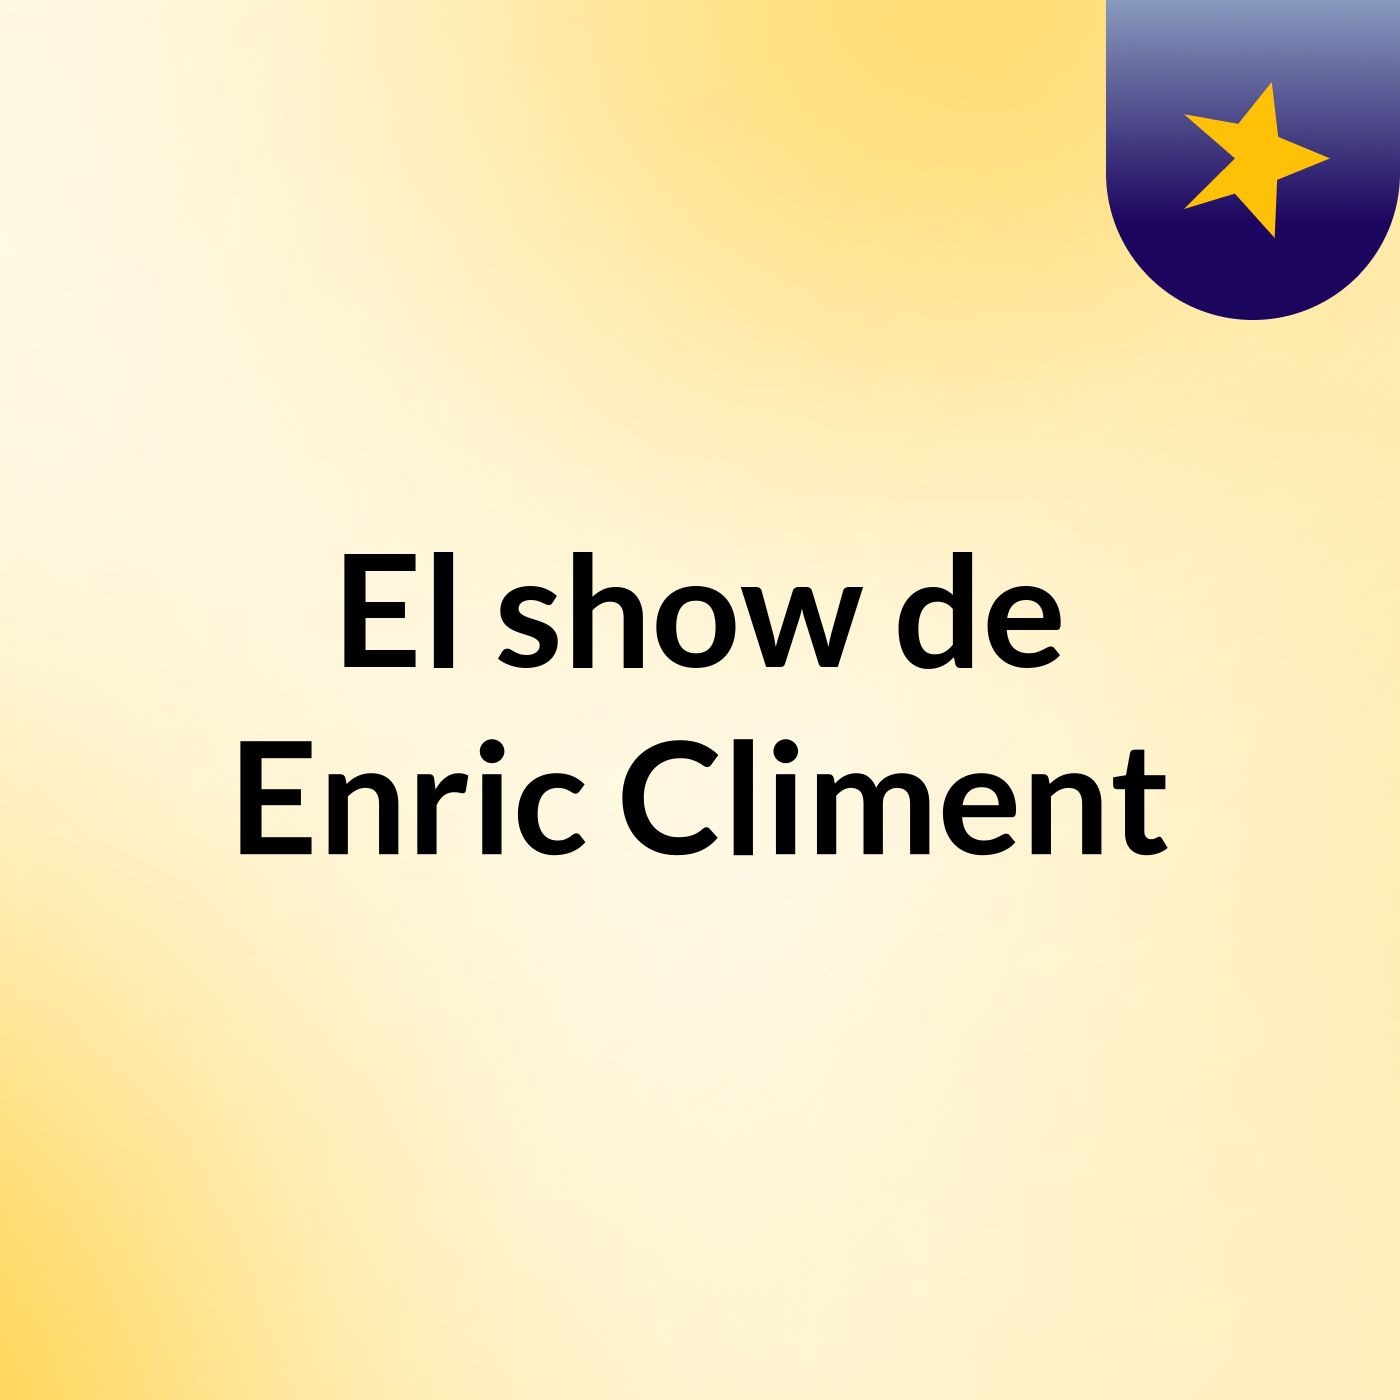 El show de Enric Climent